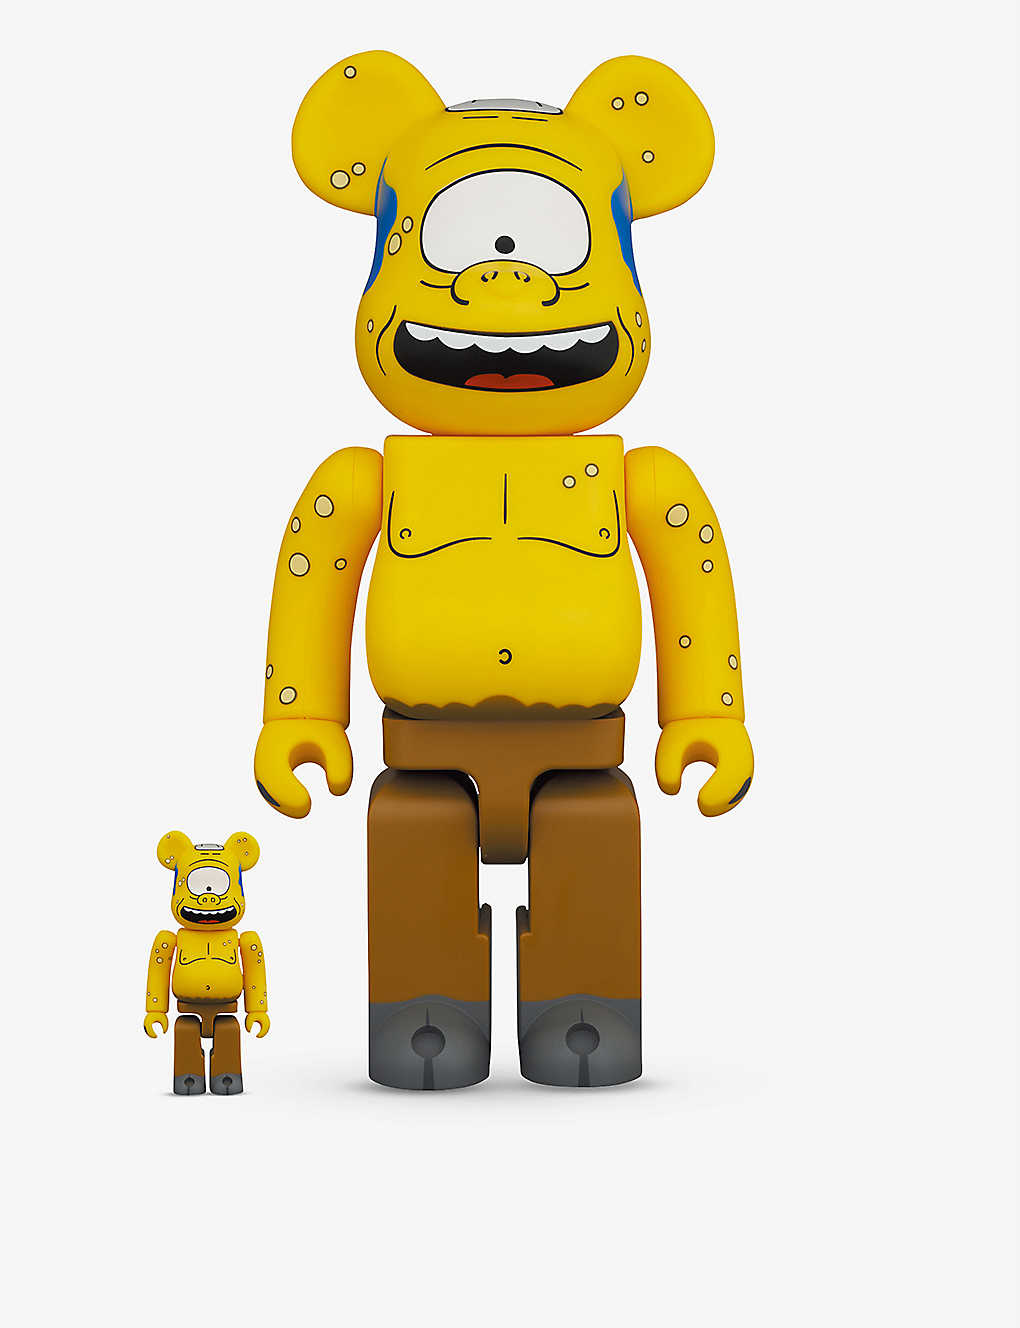 MEDICOM BE@RBRICK The Simpsons 2018 Series Bearbrick Figure 400% Luxury Toy 